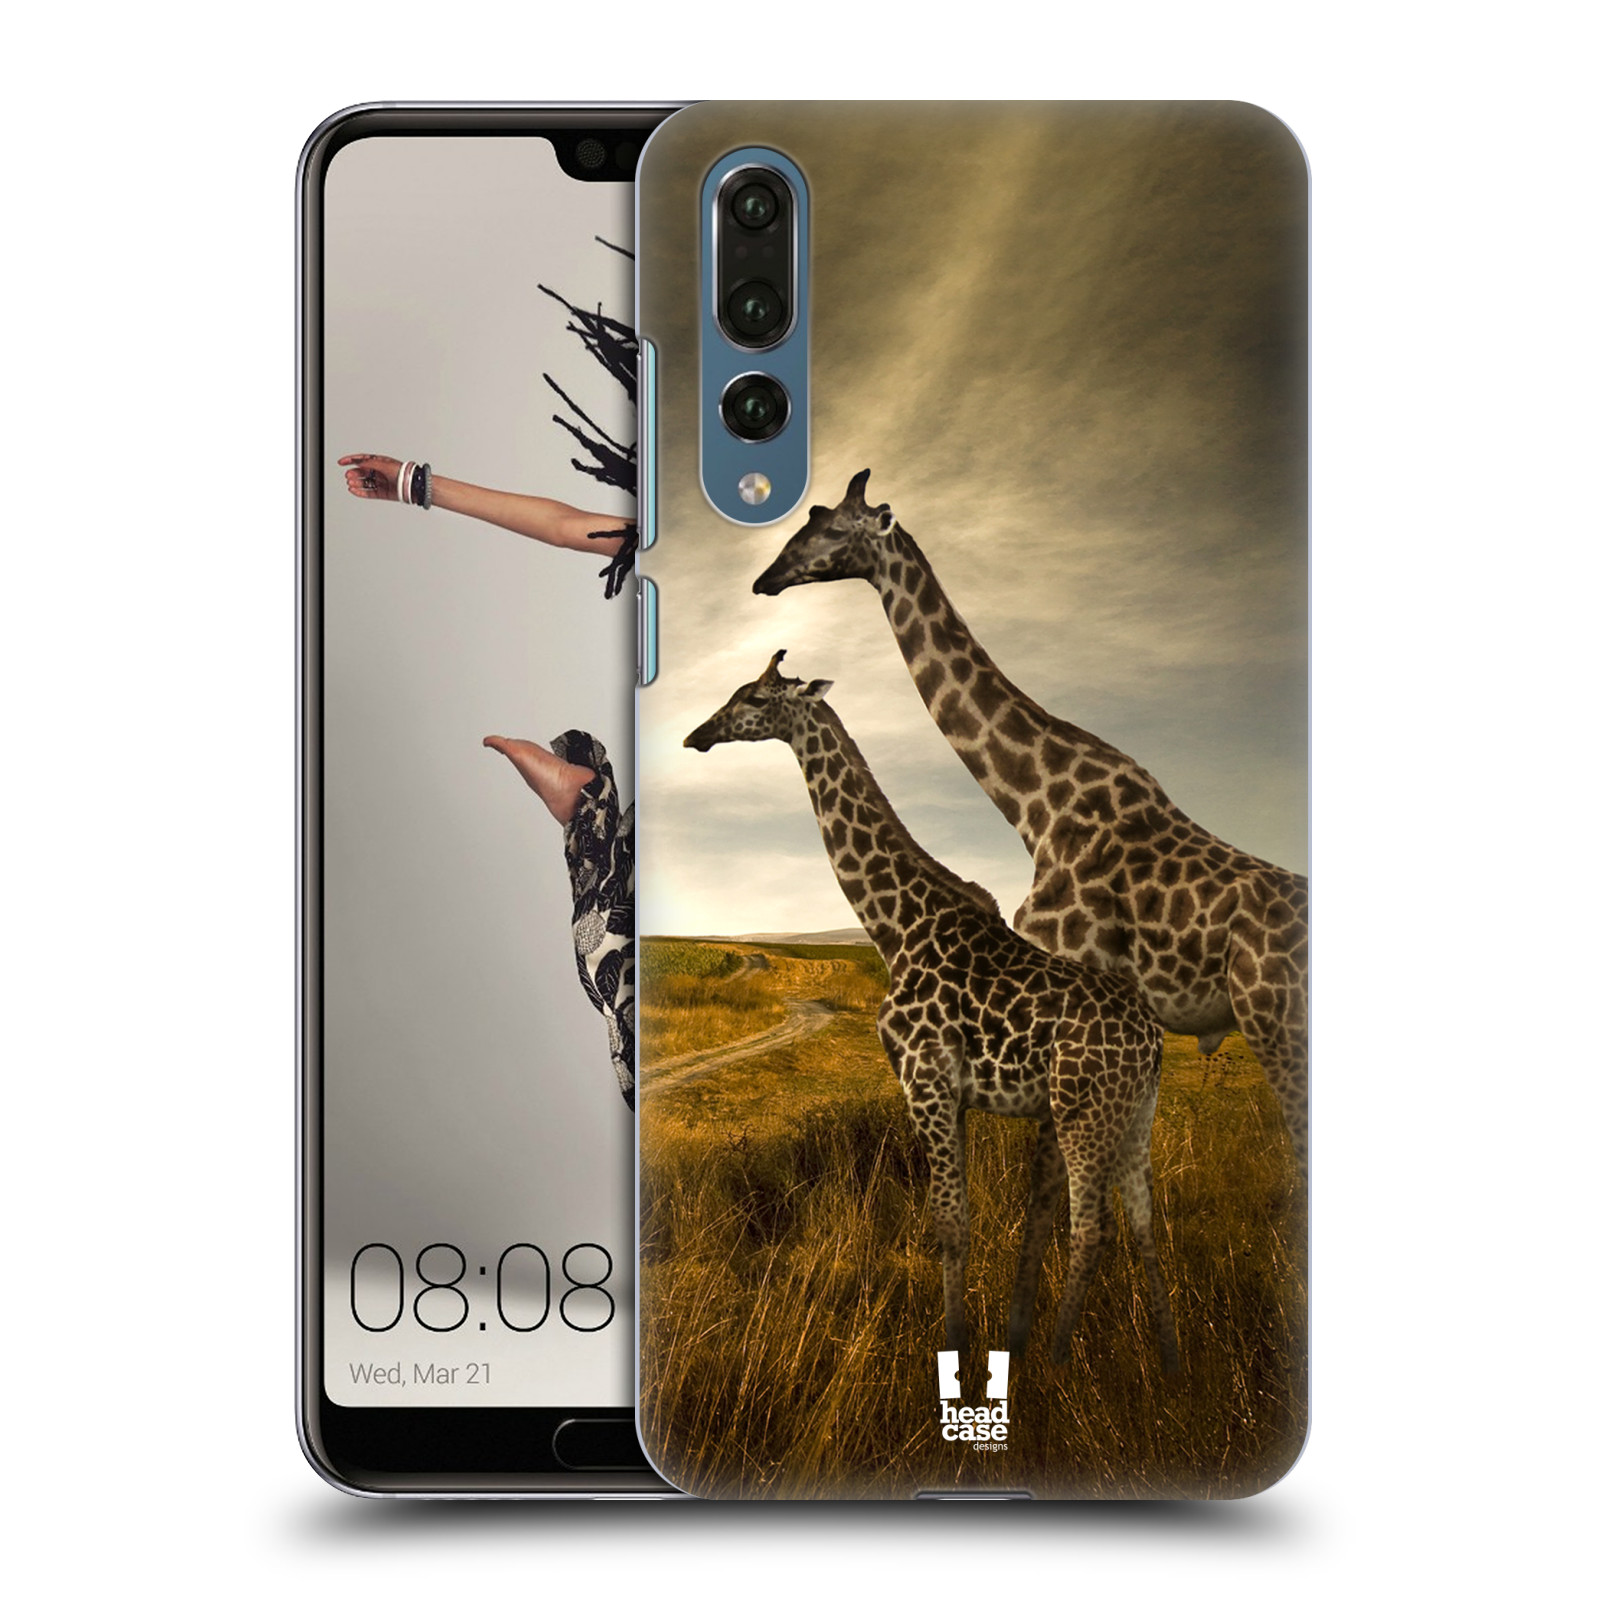 Zadní obal pro mobil Huawei P20 PRO - HEAD CASE - Svět zvířat žirafy